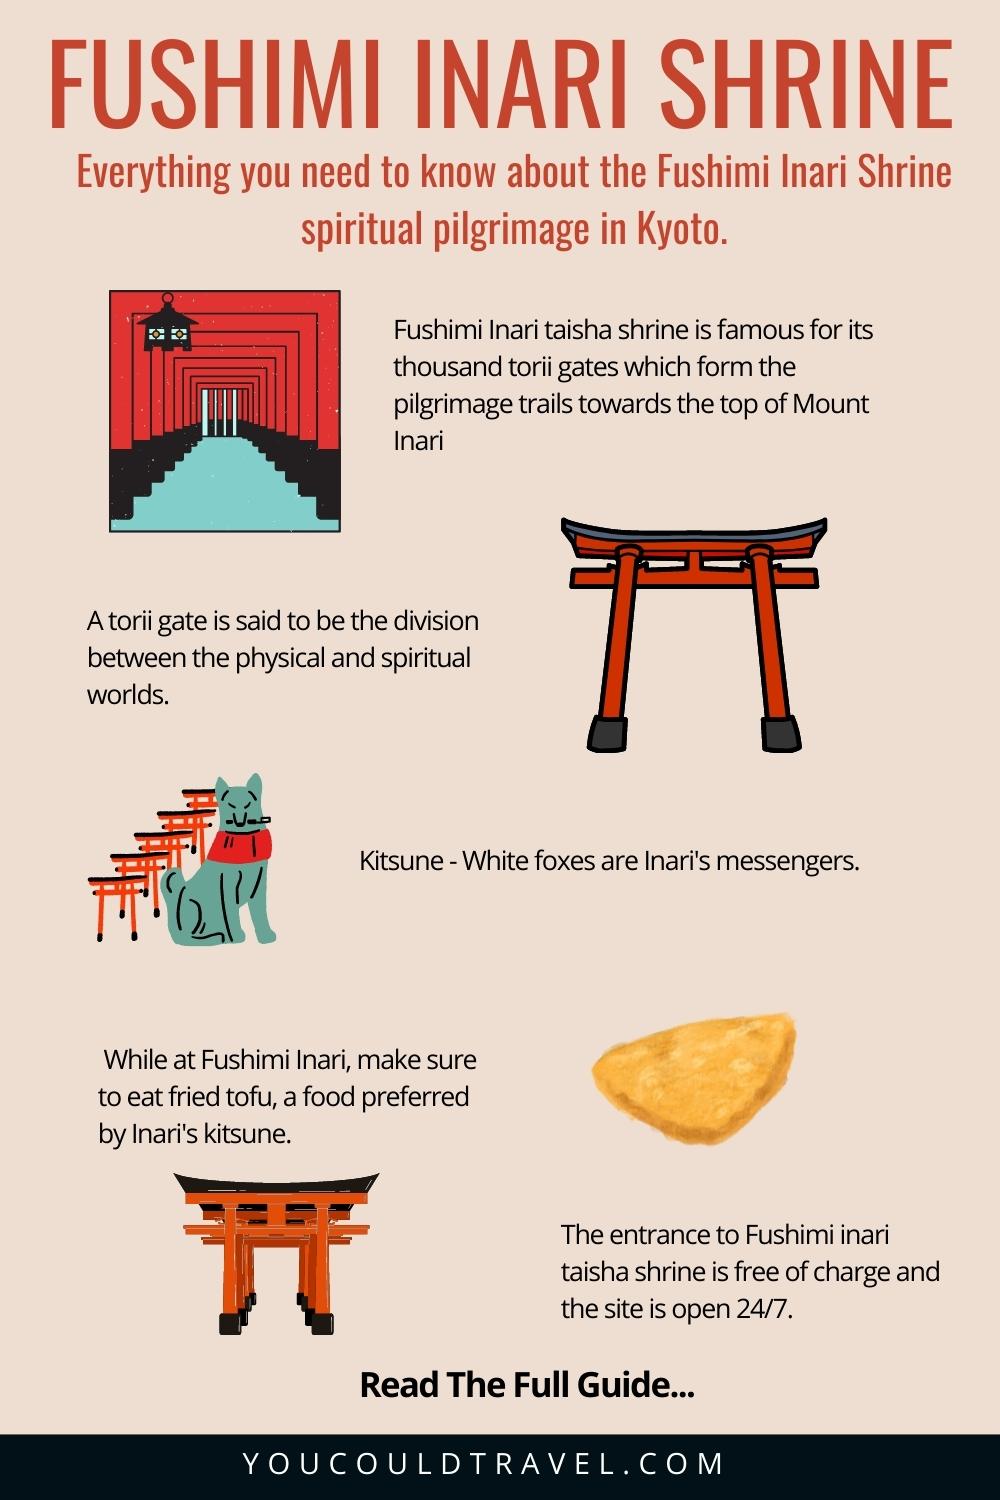 Complete guide to Fushimi Inari Shrine